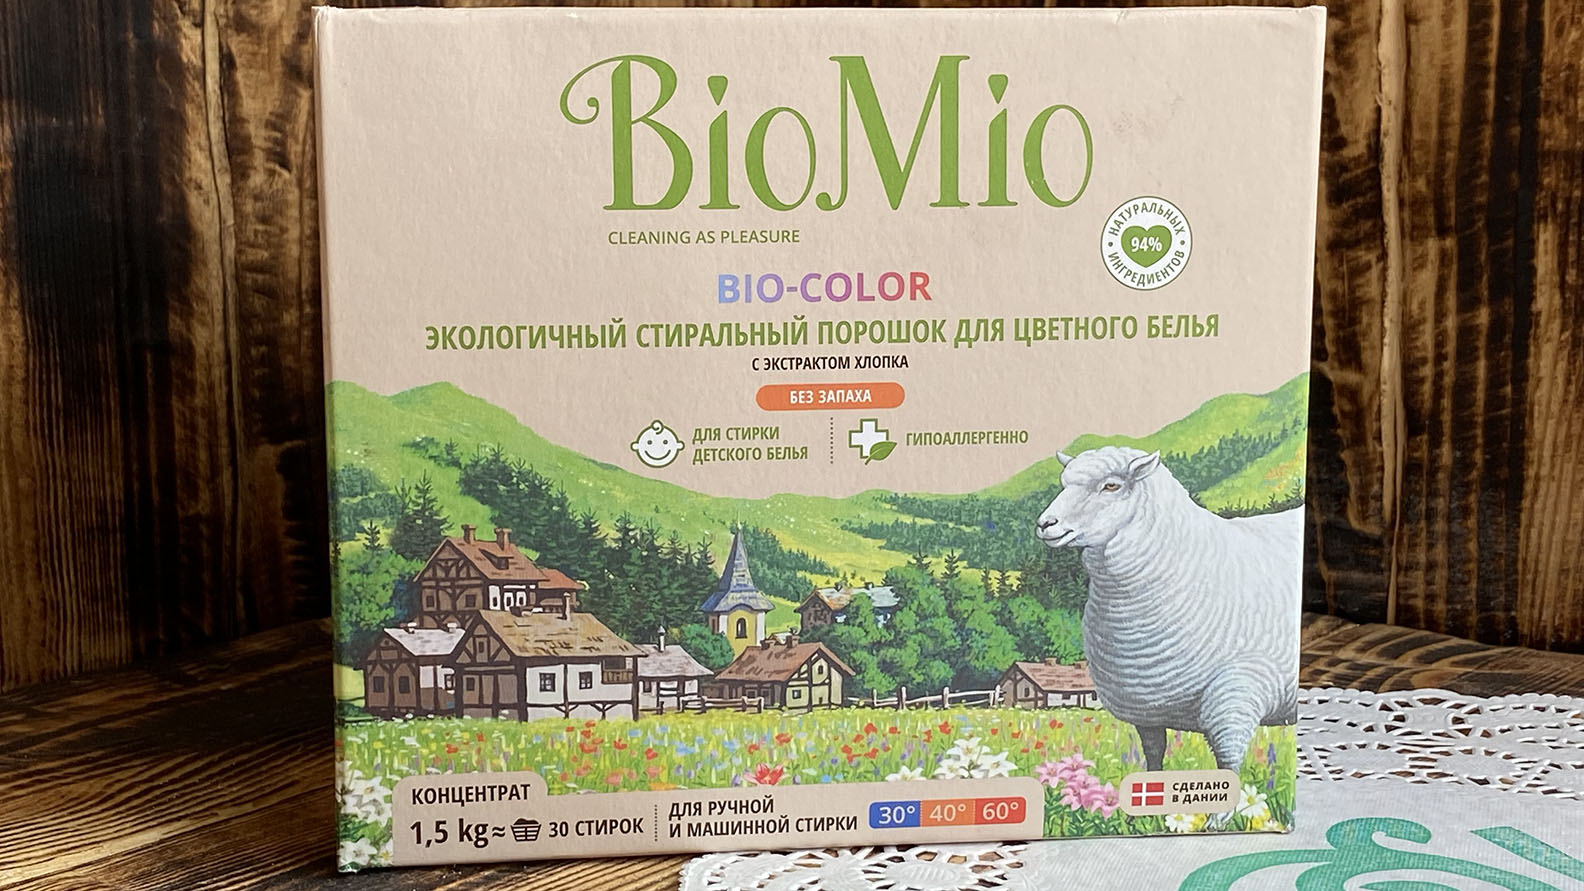 Экологичный стиральный порошок для цветного белья с экстрактами хлопка  Biomio Bio-Color 1,5 кг